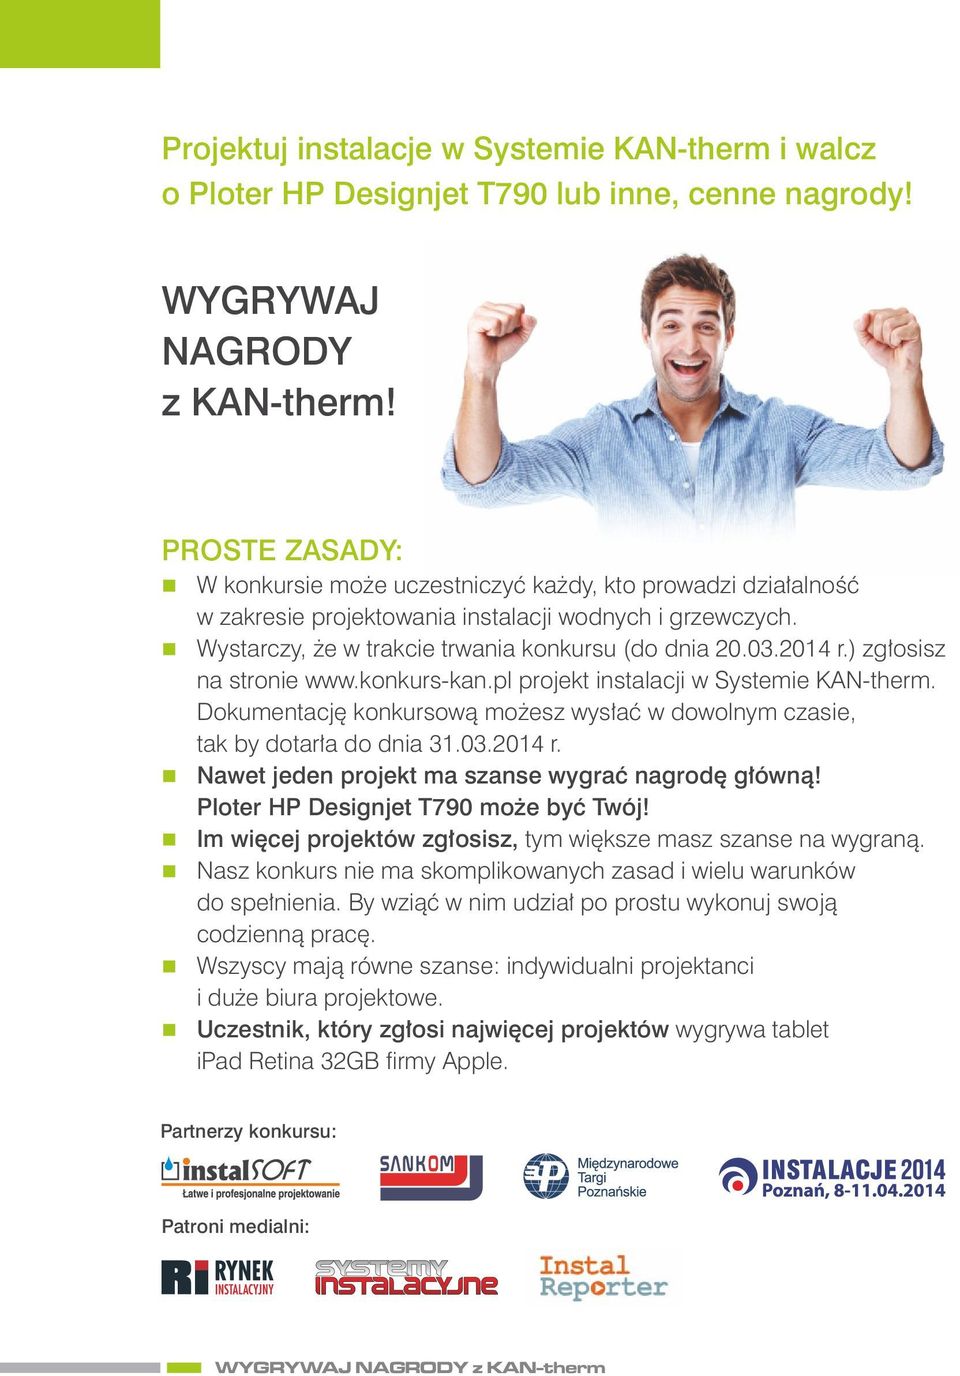 ) zgłosisz a stroie www.kokurs-ka.pl projekt istalacji w Systemie KAN-therm. Dokumetację kokursową możesz wysłać w dowolym czasie, tak by dotarła do dia 31.03.2014 r.